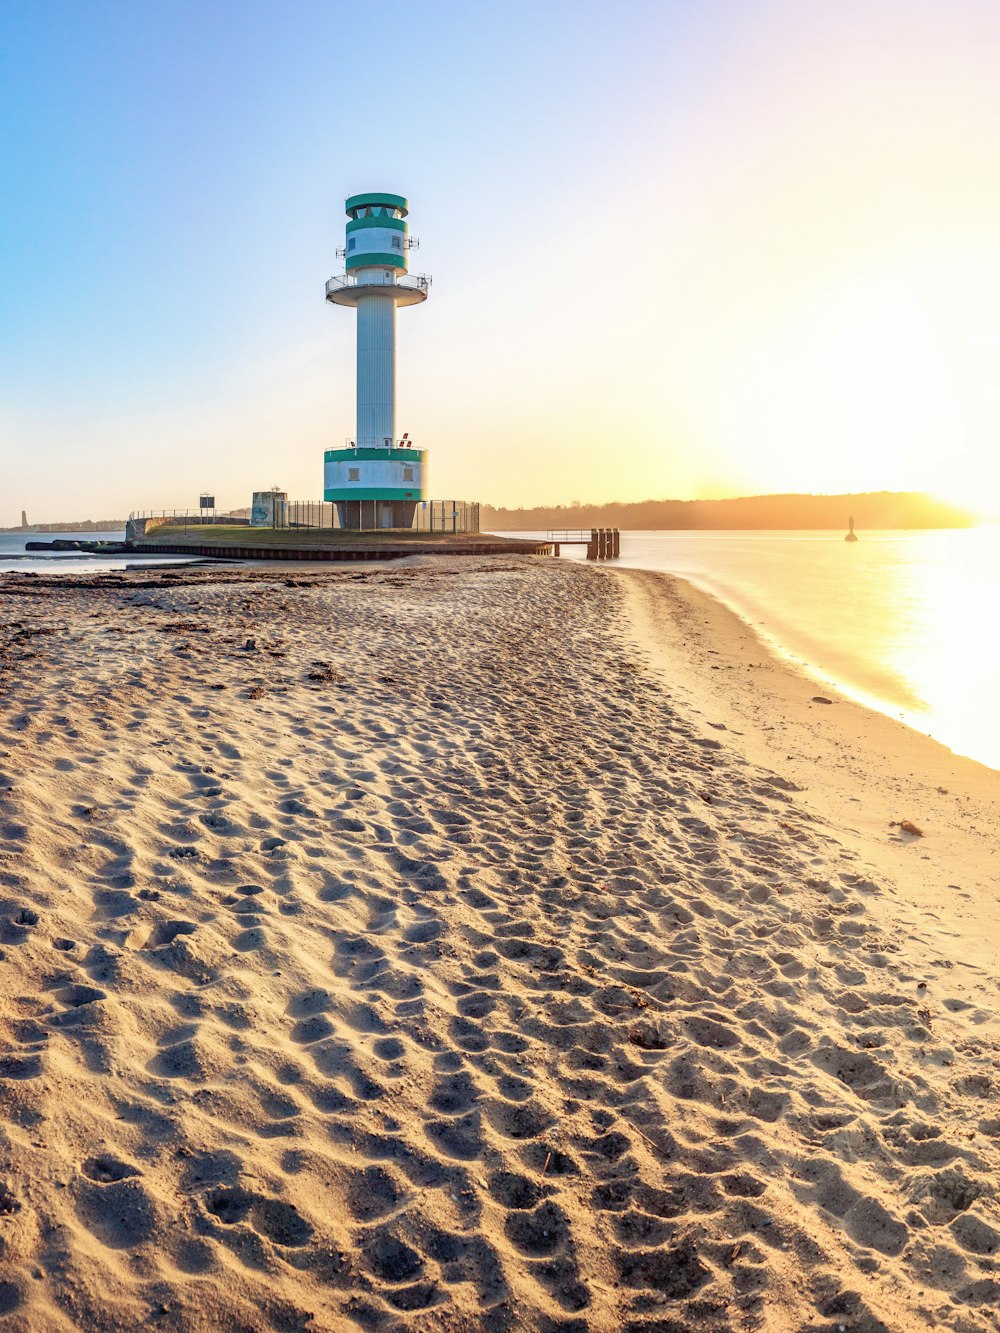 a lighthouse on a sandy beach